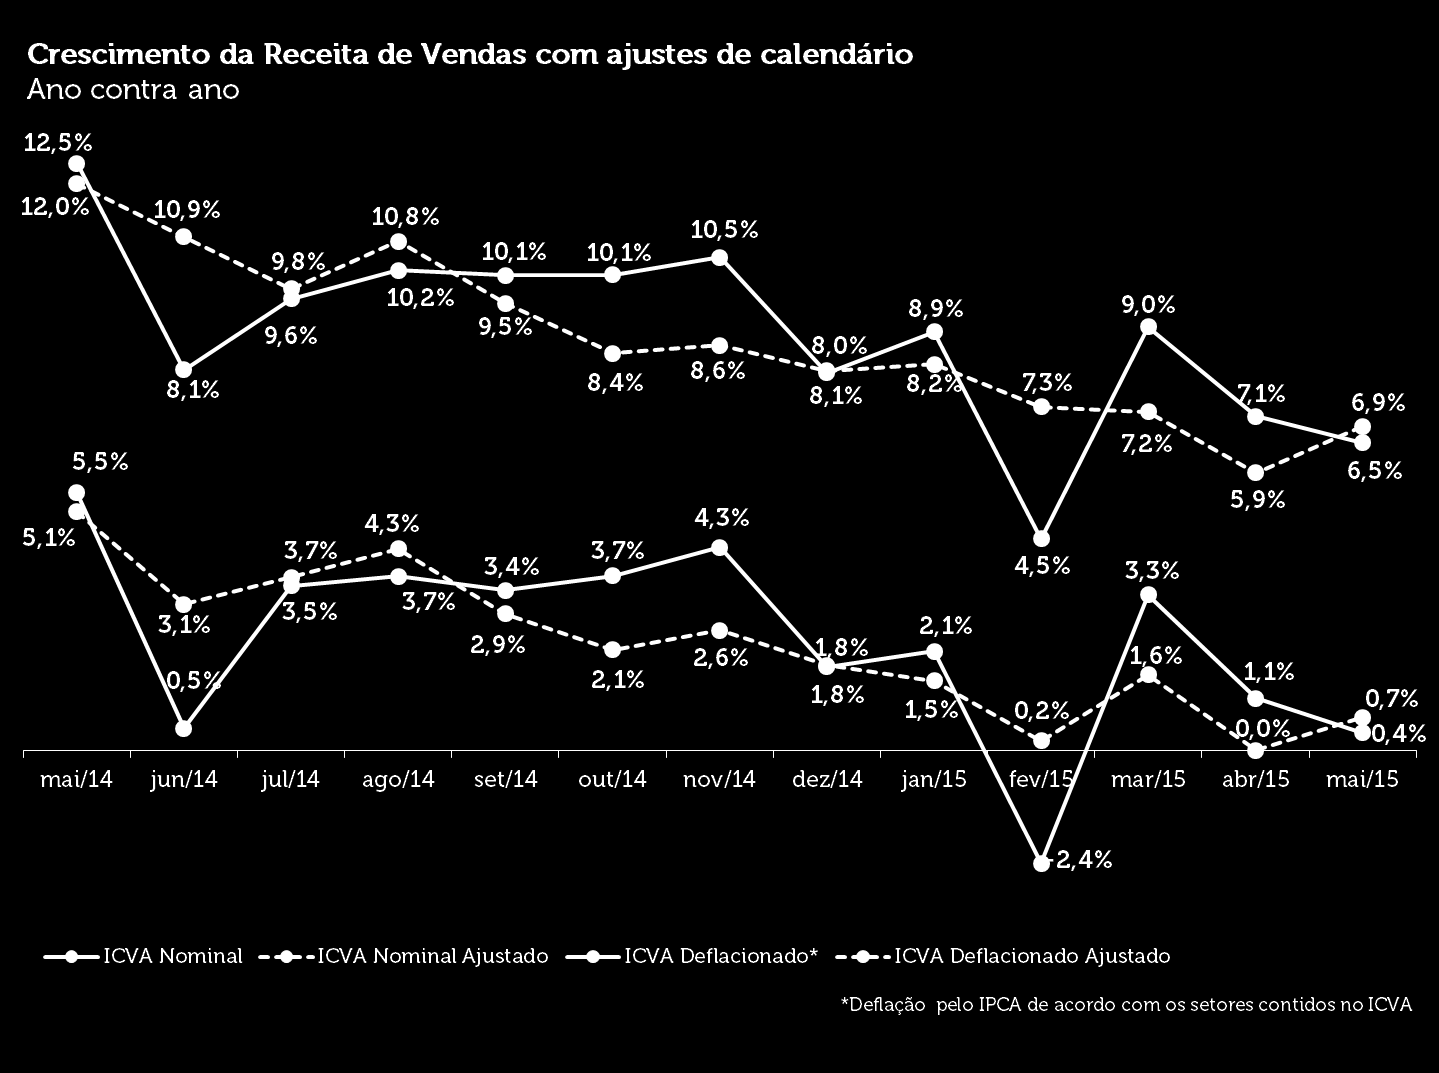 Cielo do Varejo Ampliado (ICVA), divulgado nesta terçafeira (16). Em abril, o indicador apresentou crescimento de 1,1%.